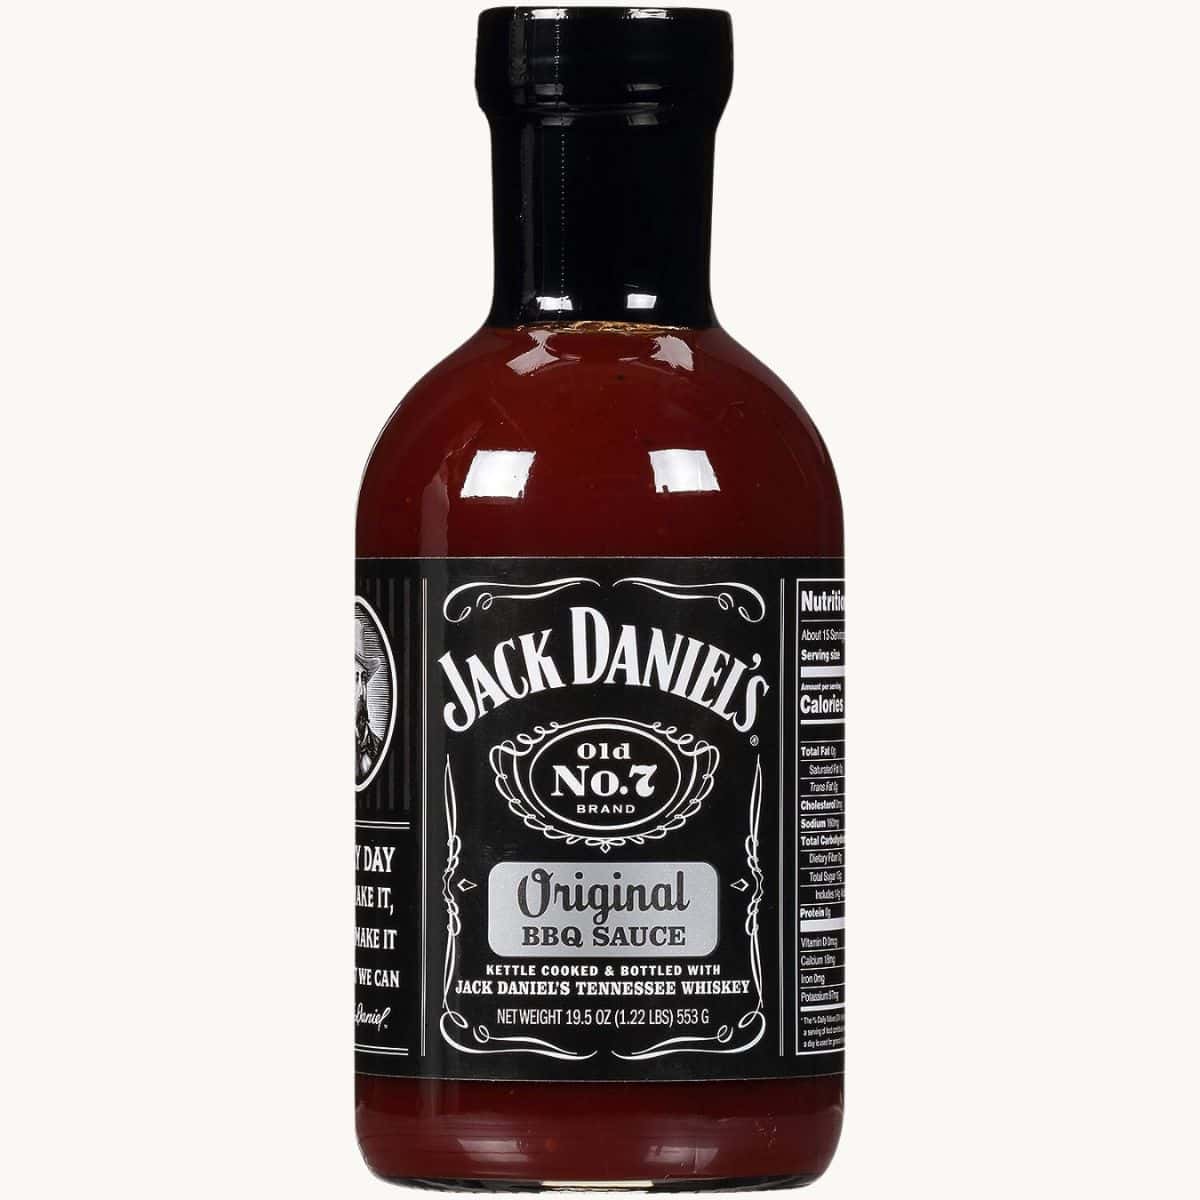 Jack Daniels BBQ Sauce.